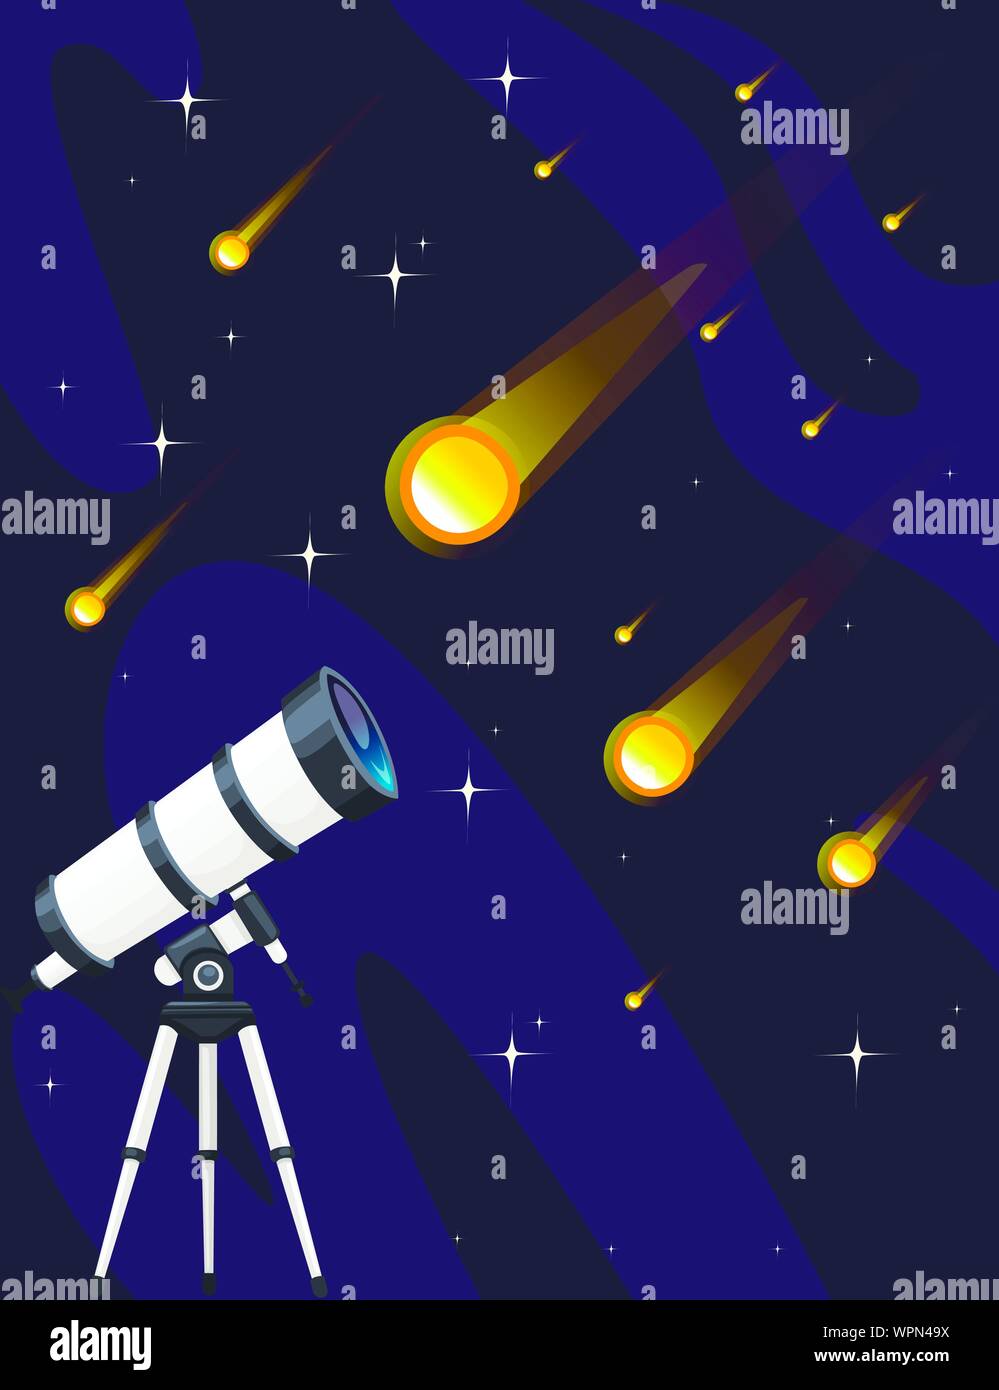 Weiß Teleskop und Sternschnuppen am nächtlichen Himmel Hintergrund flachbild Vektor-illustration sternenregen Design vertikale Banner. Stock Vektor